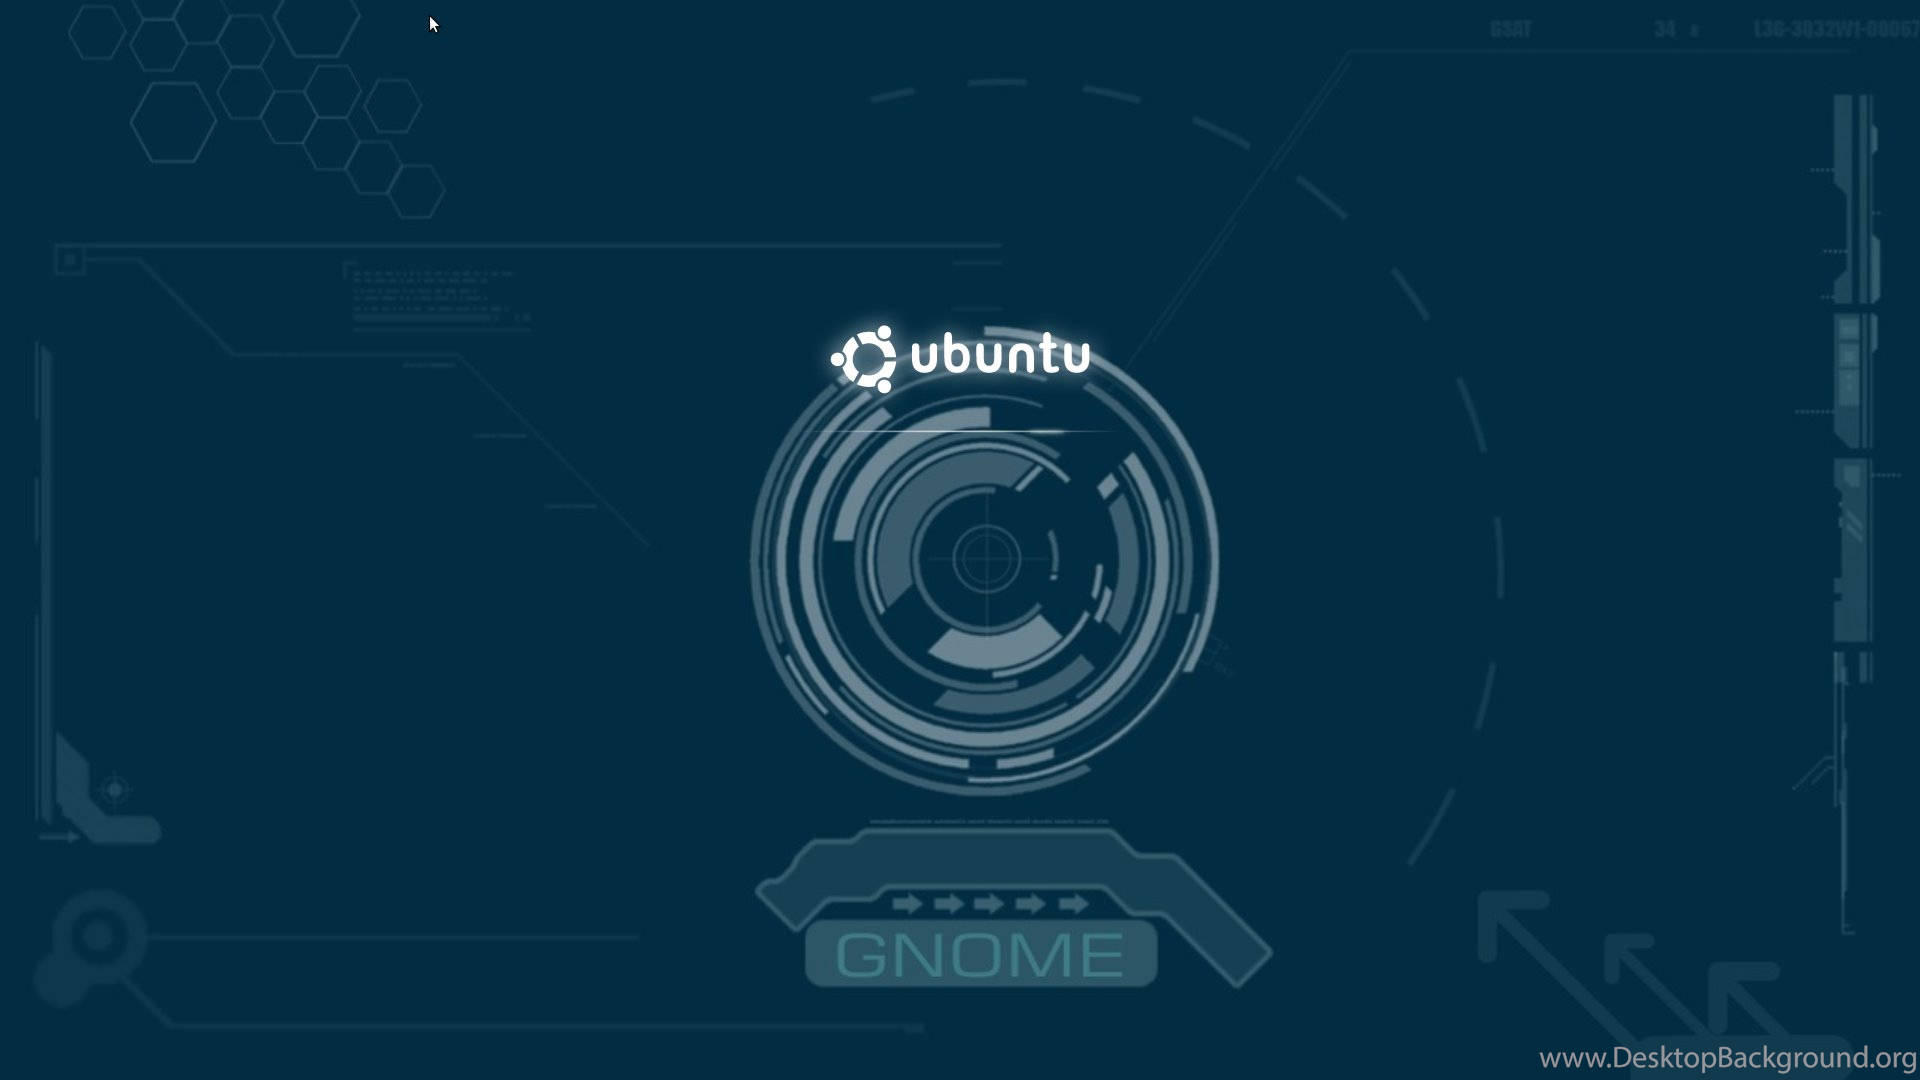 Ubuntu Gnome Default Wallpaper